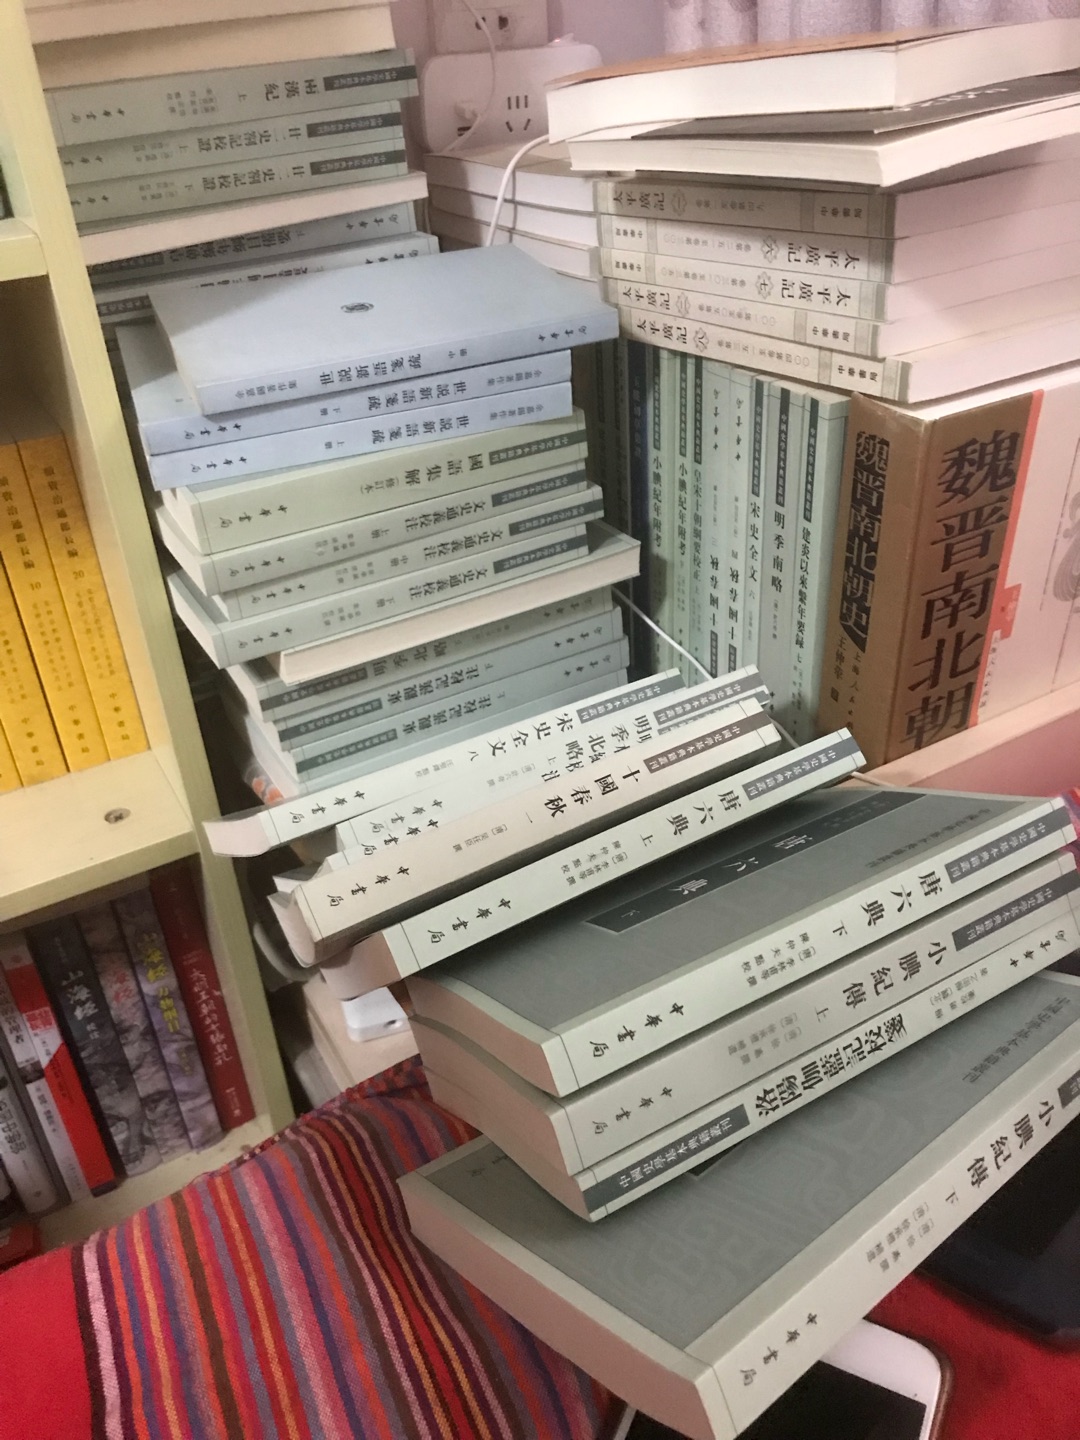 中华书局这套中国史学典籍丛书我凑齐了，大促很低的价格凑齐的，感谢